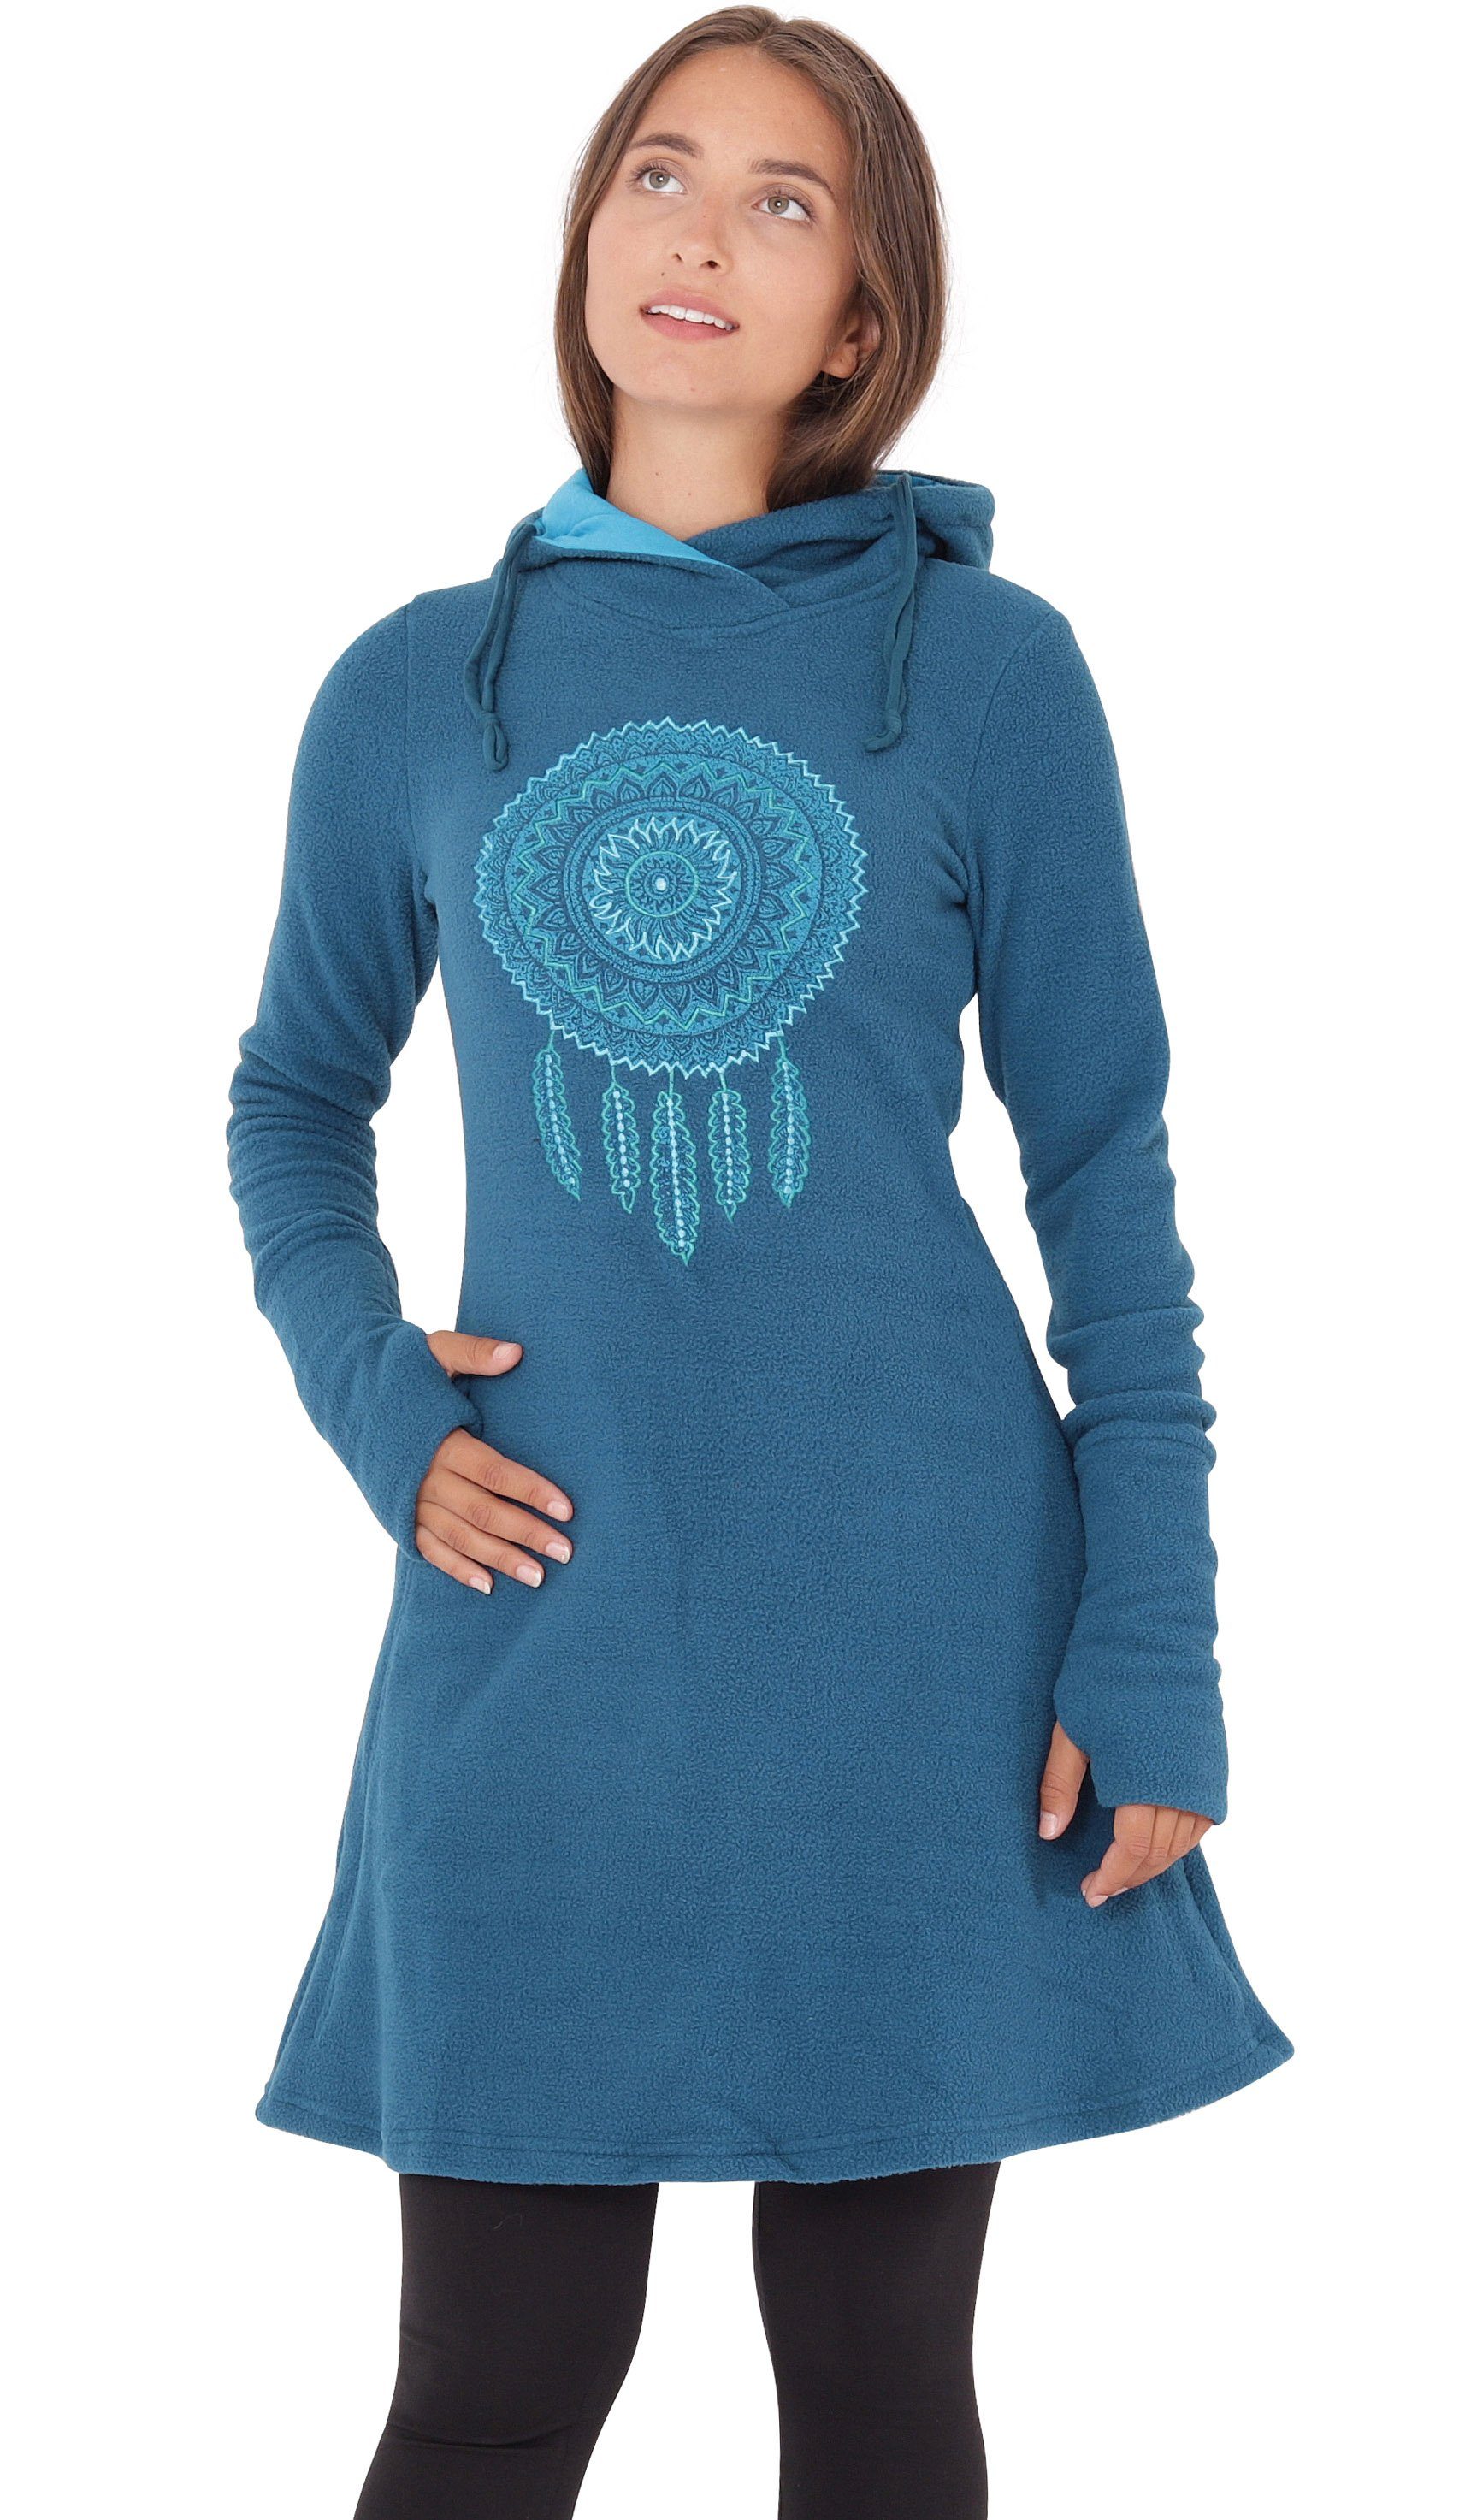 PUREWONDER A-Linien-Kleid Kapuzenkleid Winterkleid mit Traumfänger dr31 Fleece Blau | Kleider